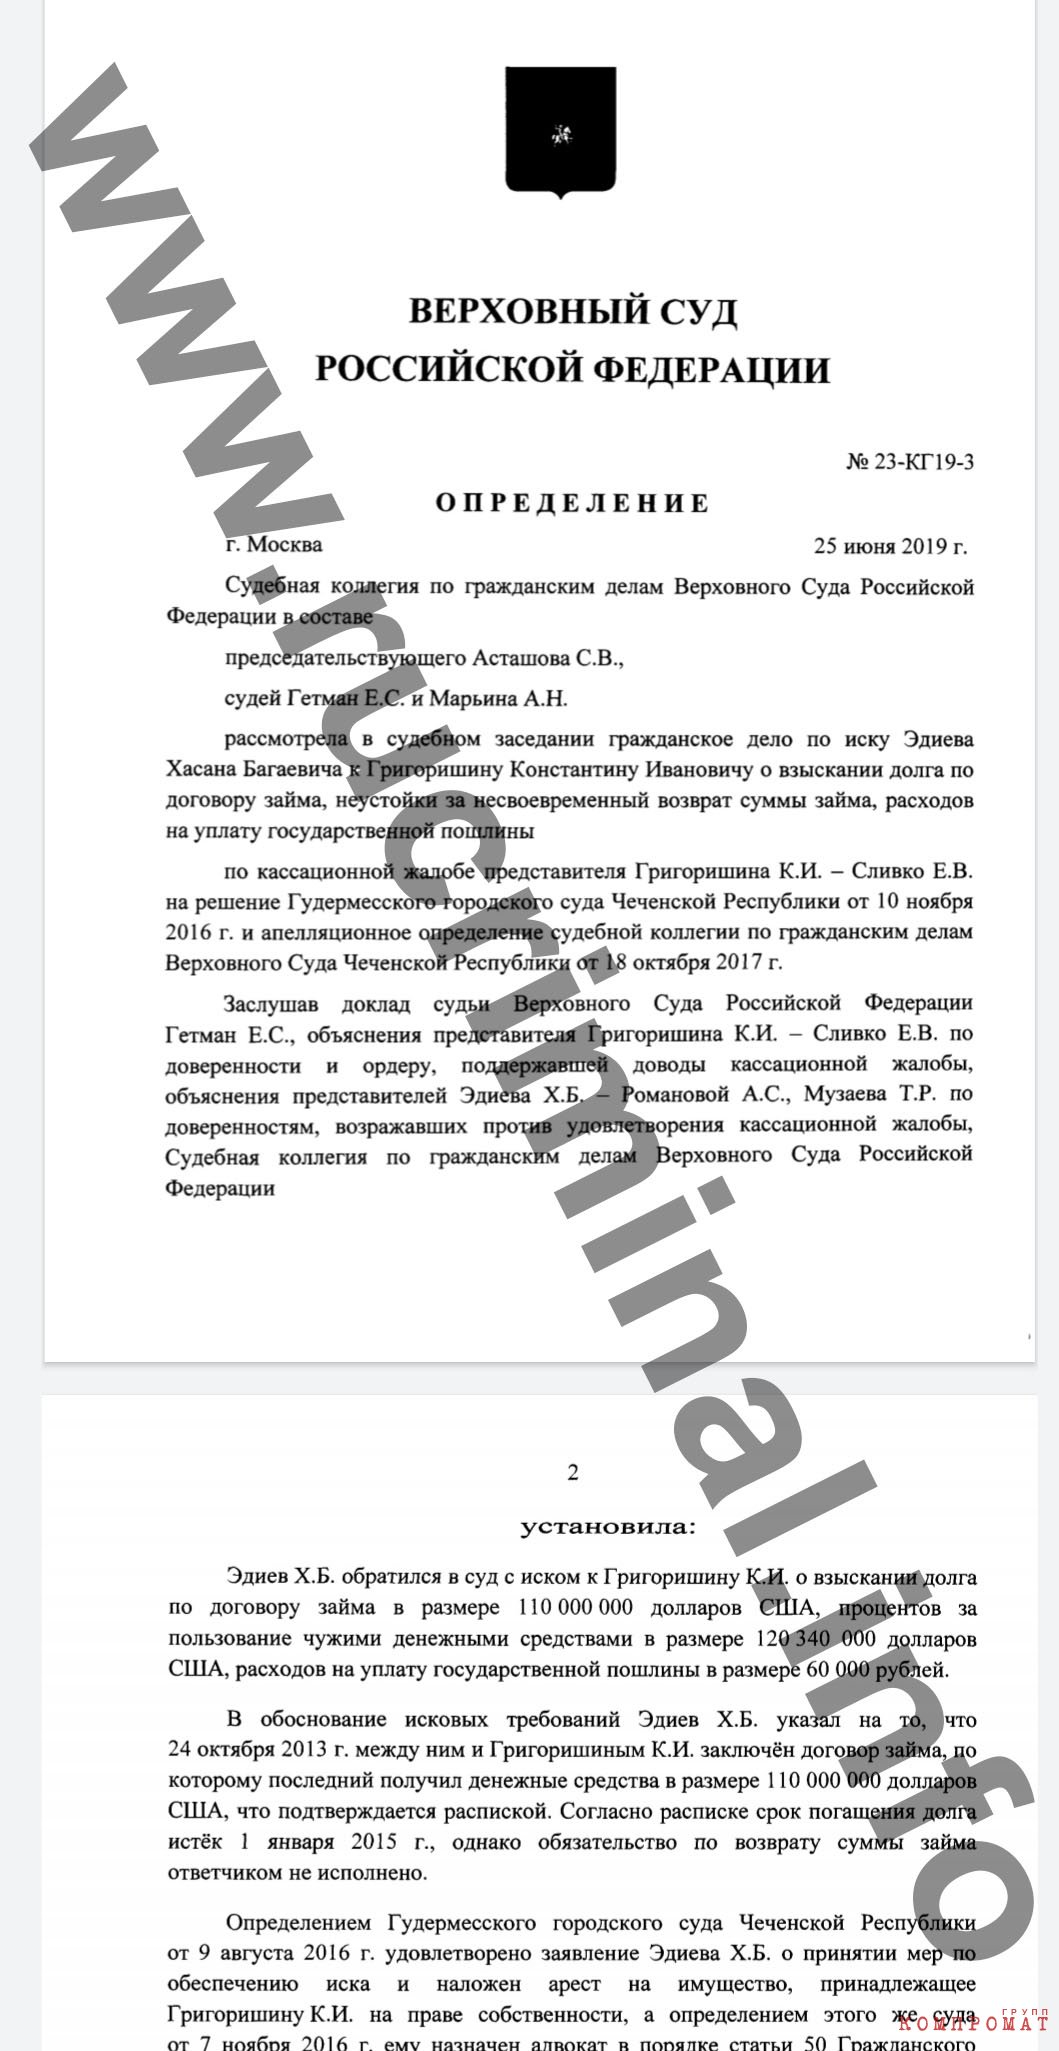 Реферат: Апелляционный суд в судебной системе Украины